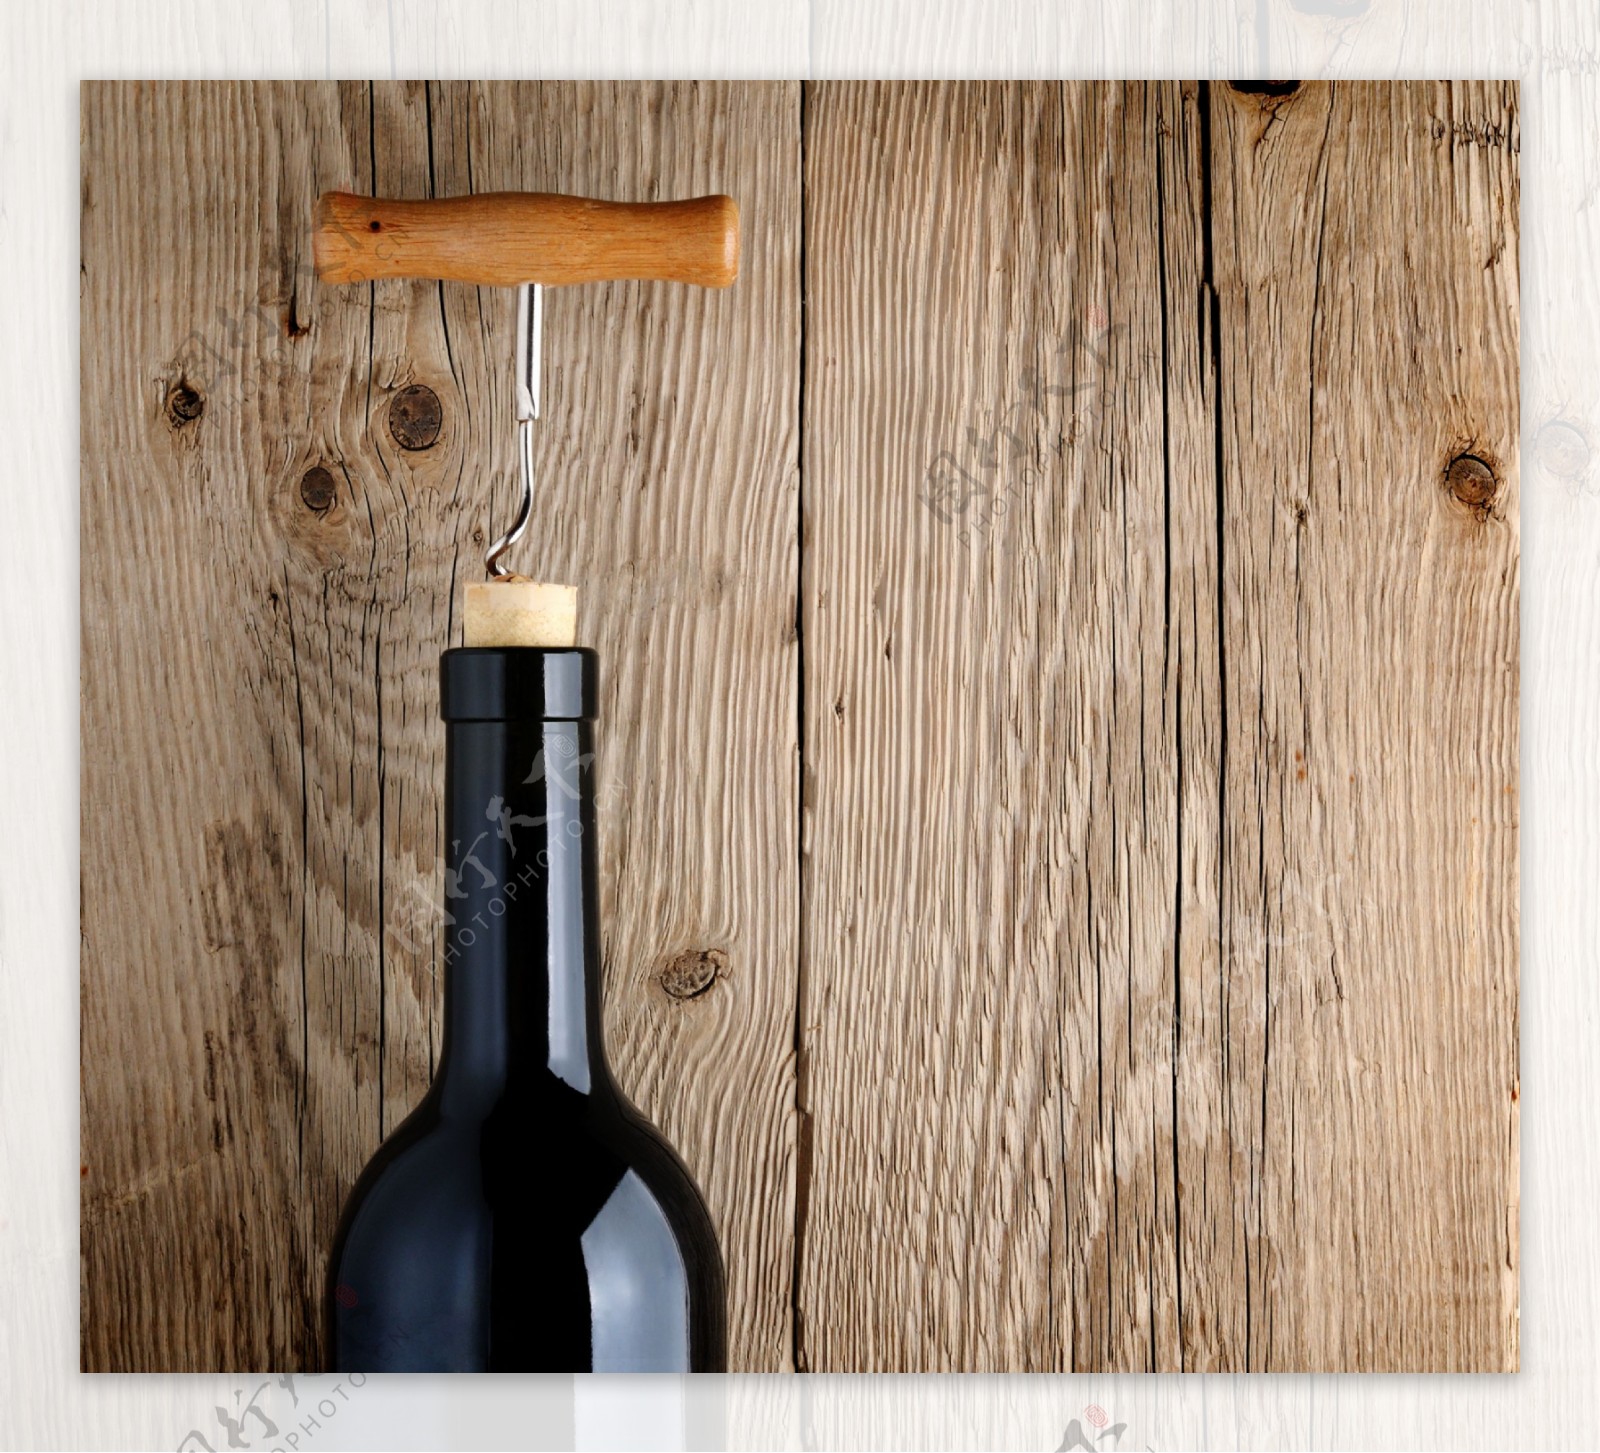 葡萄酒瓶和启瓶器图片